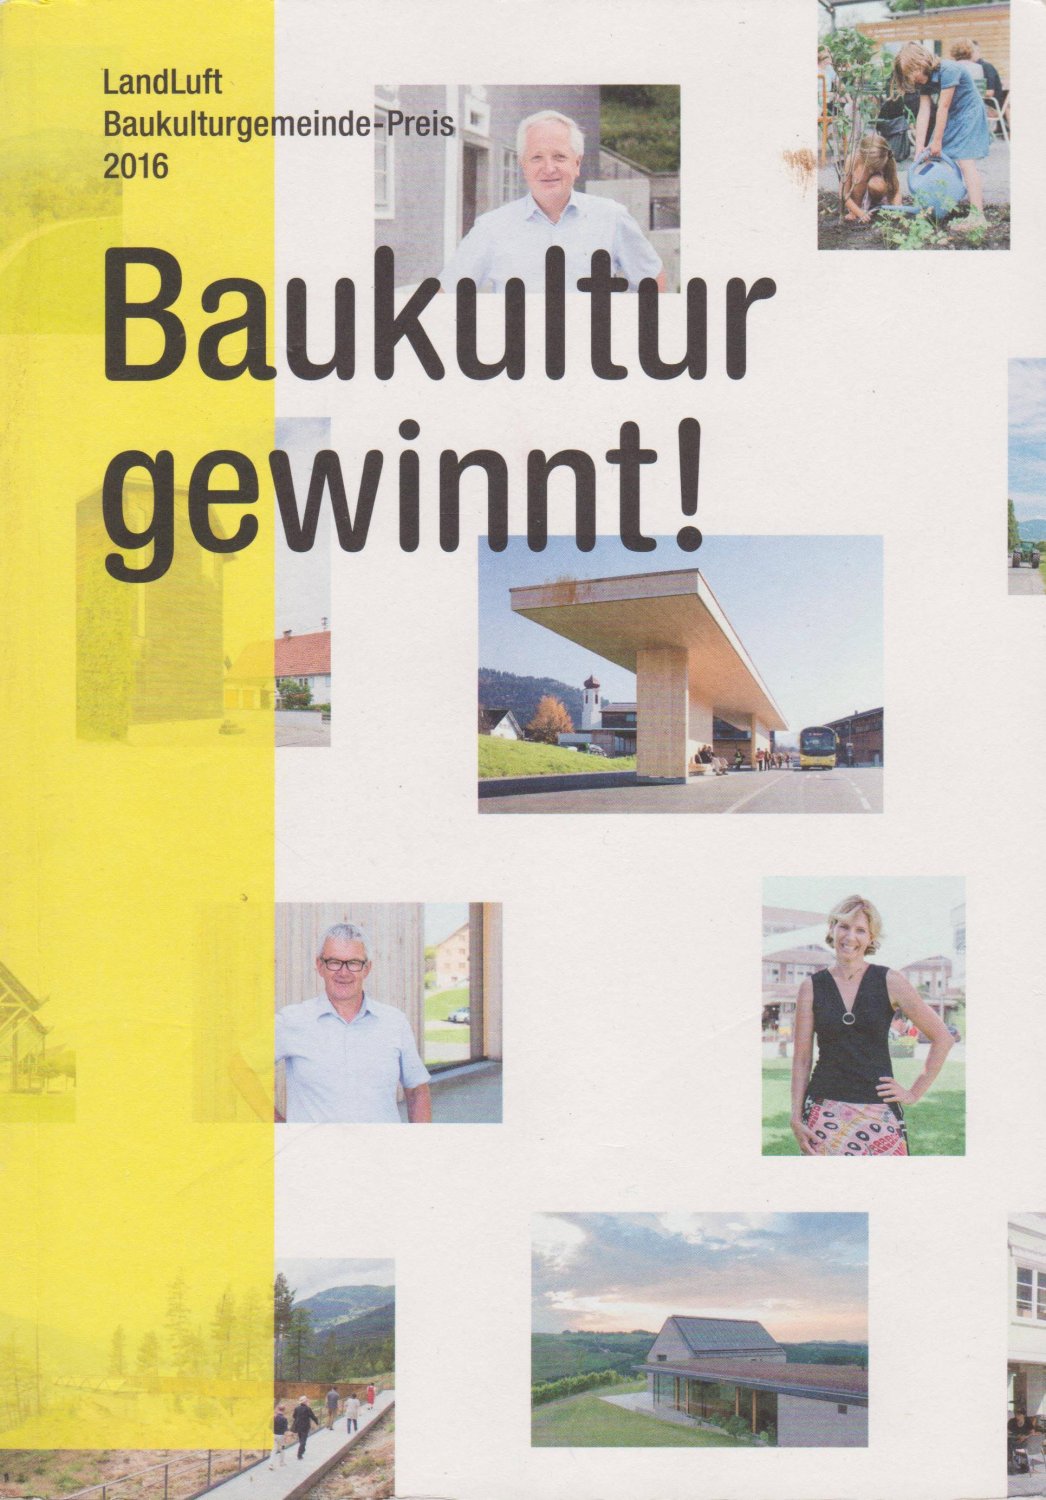 LandLuft - Verein für Baukultur und Kommunikation in ländlichen Räumen (Herausgeber):  Baukultur gewinnt! Baukulturgemeinde-Preis 2016. 